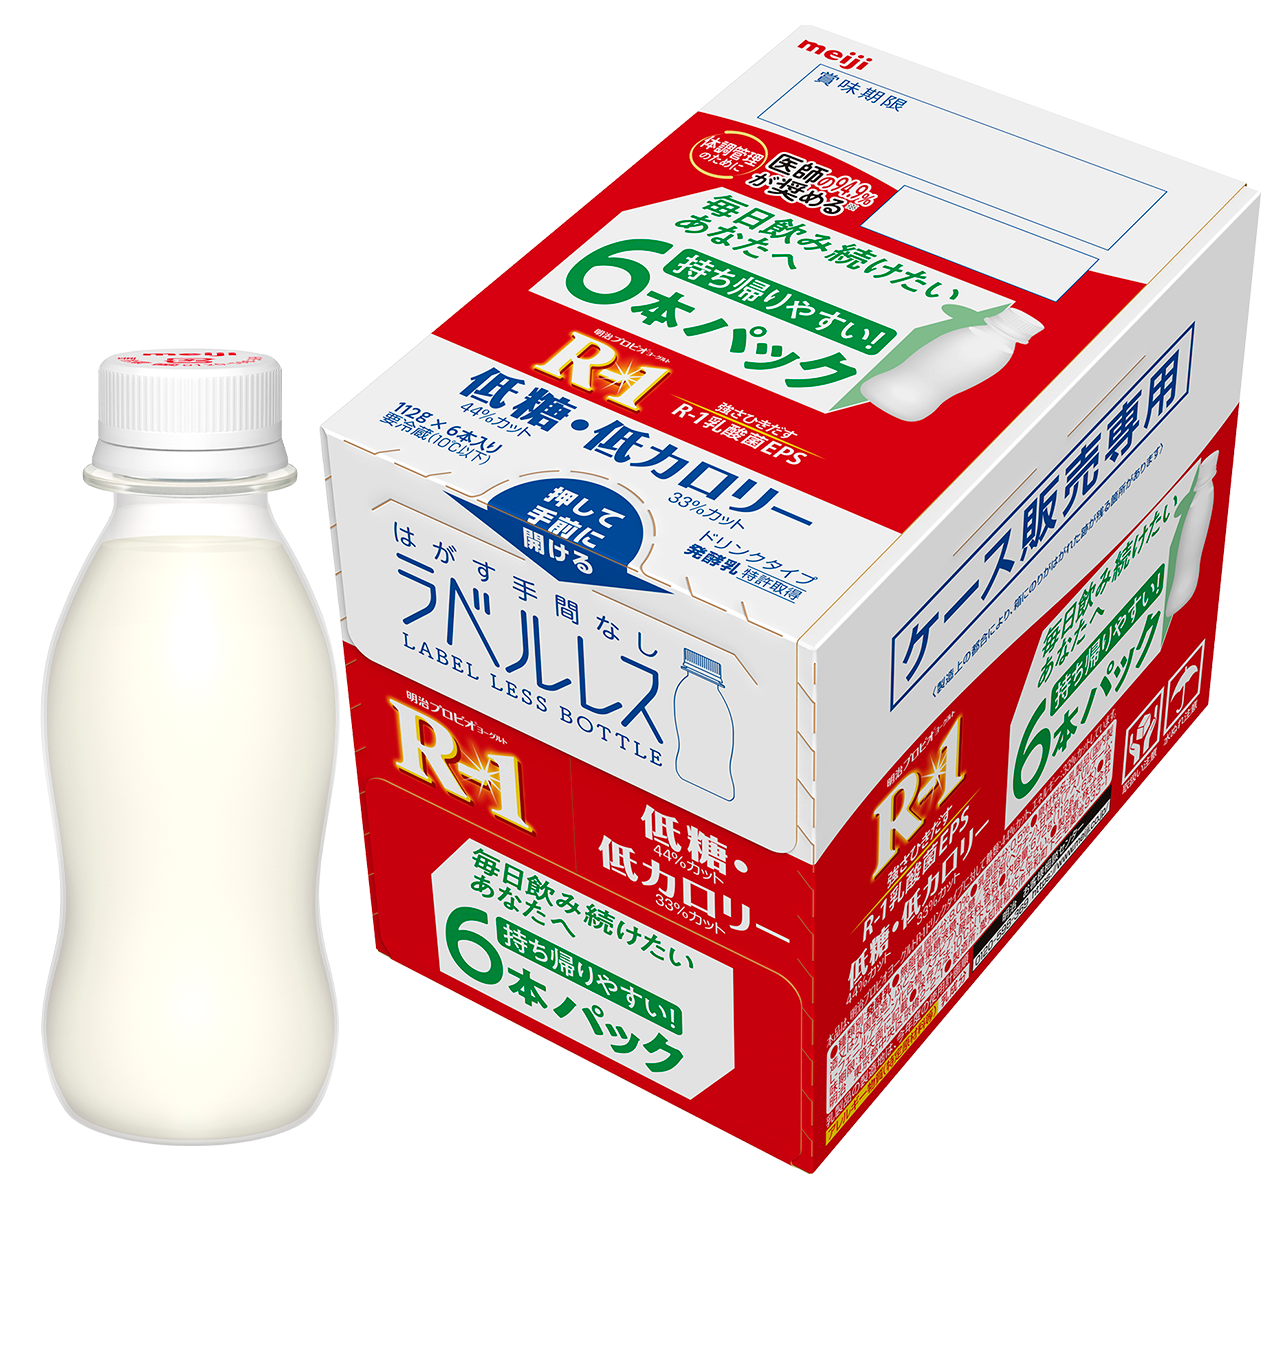 明治益生酸奶R-1 饮用型 低糖低卡路里 112g×6